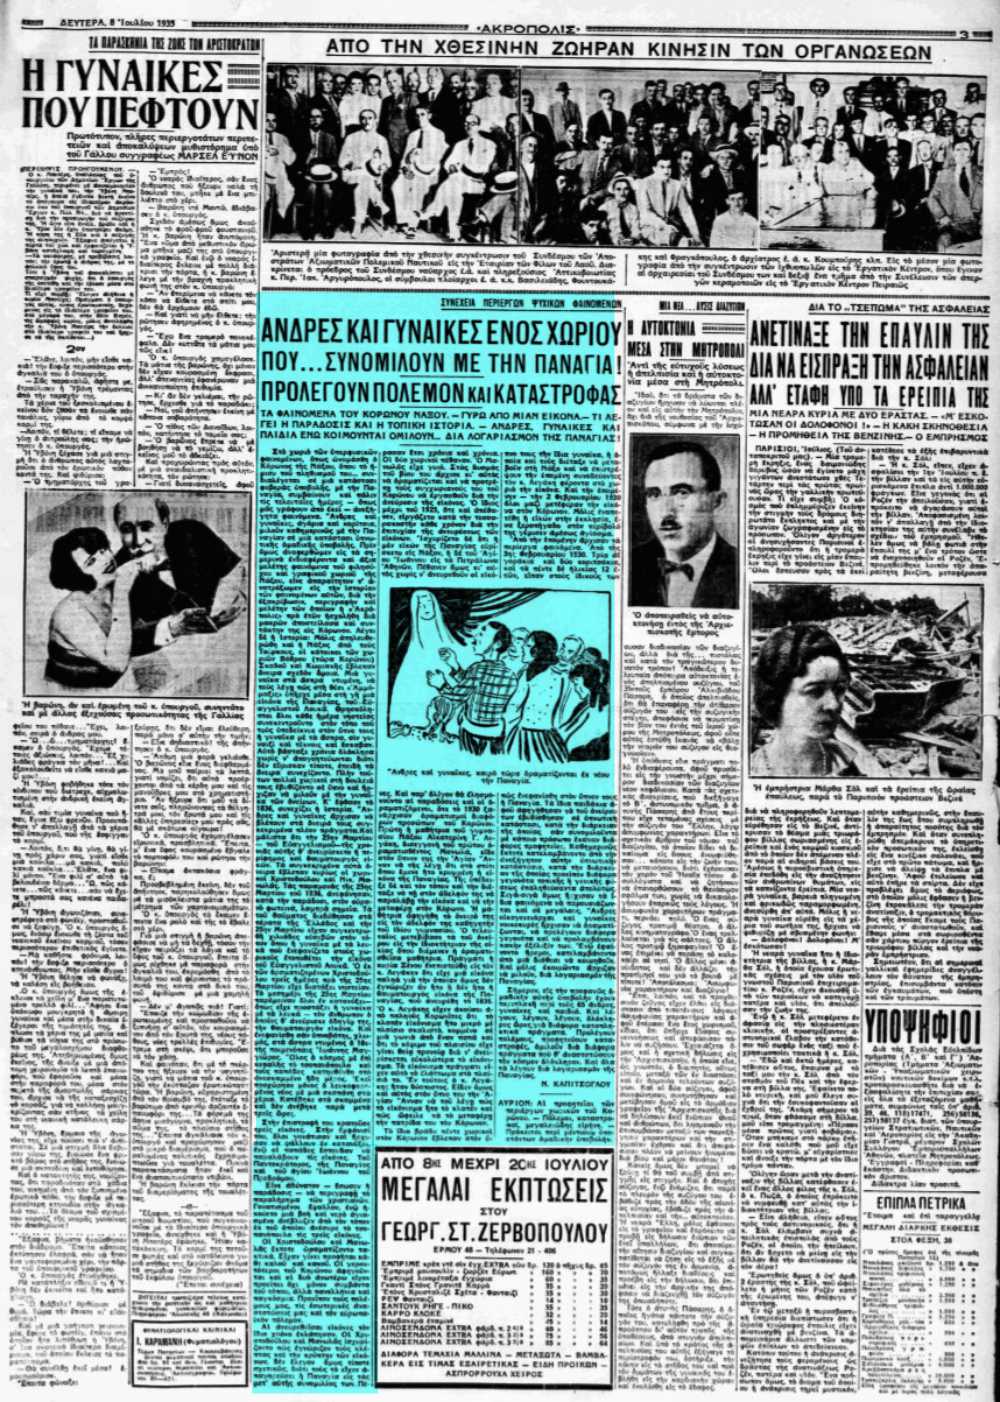 Το άρθρο, όπως δημοσιεύθηκε στην εφημερίδα "ΑΚΡΟΠΟΛΙΣ", στις 08/07/1935